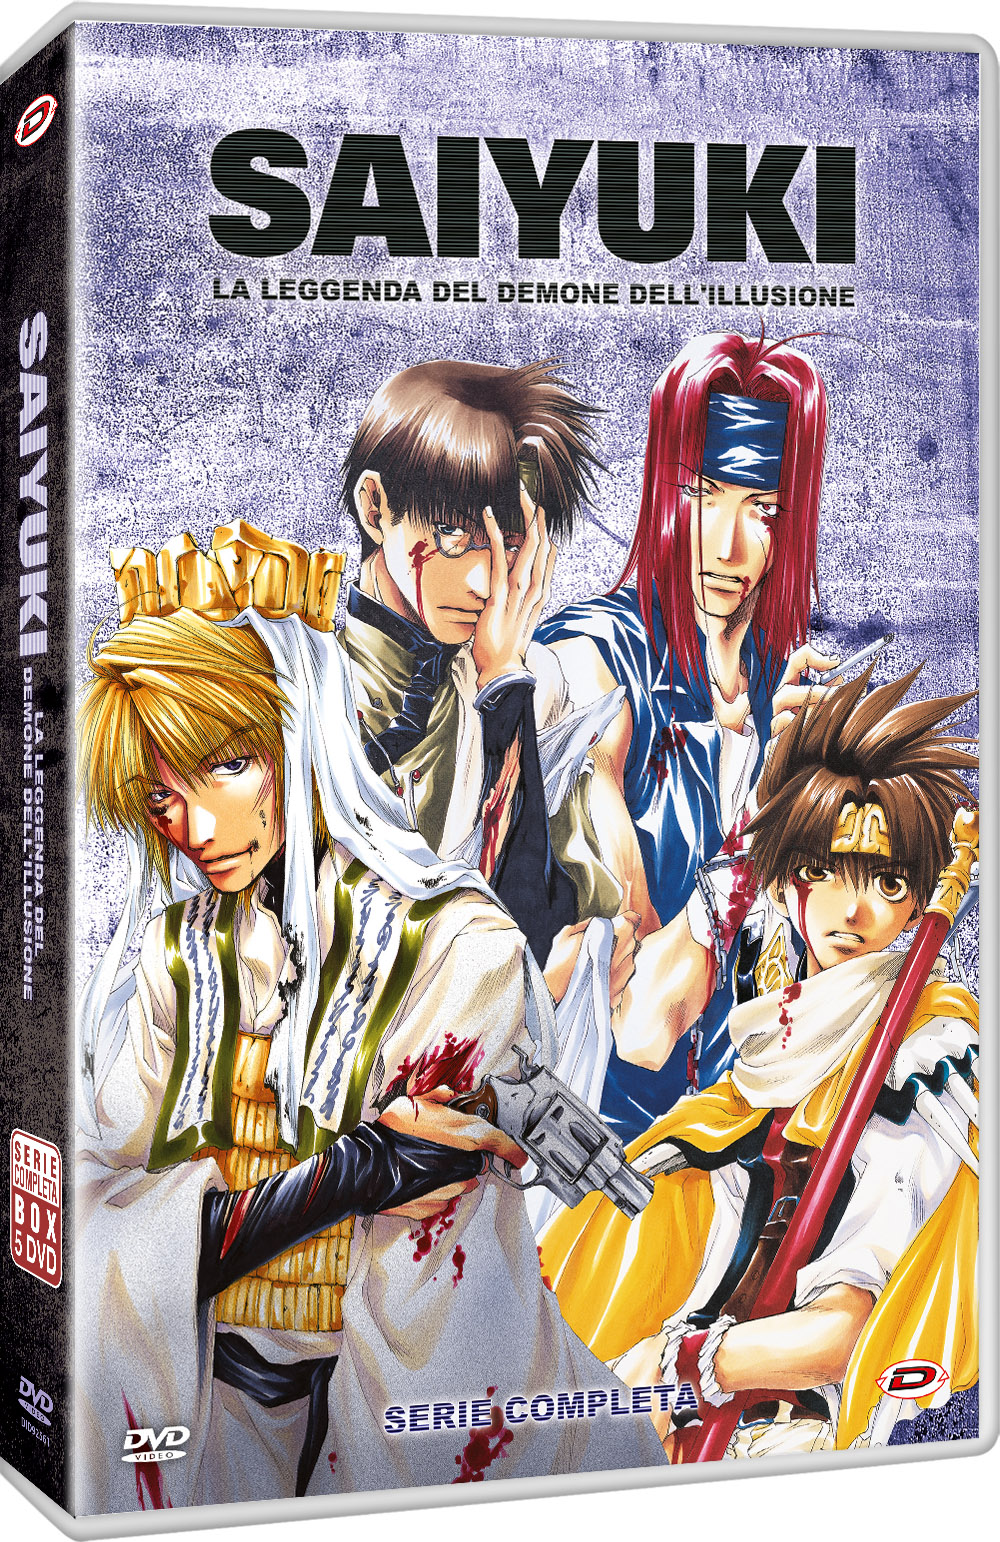 Dvd Saiyuki The Complete Series (Eps 01-50) (5 Dvd) NUOVO SIGILLATO, EDIZIONE DEL 29/07/2022 SUBITO DISPONIBILE